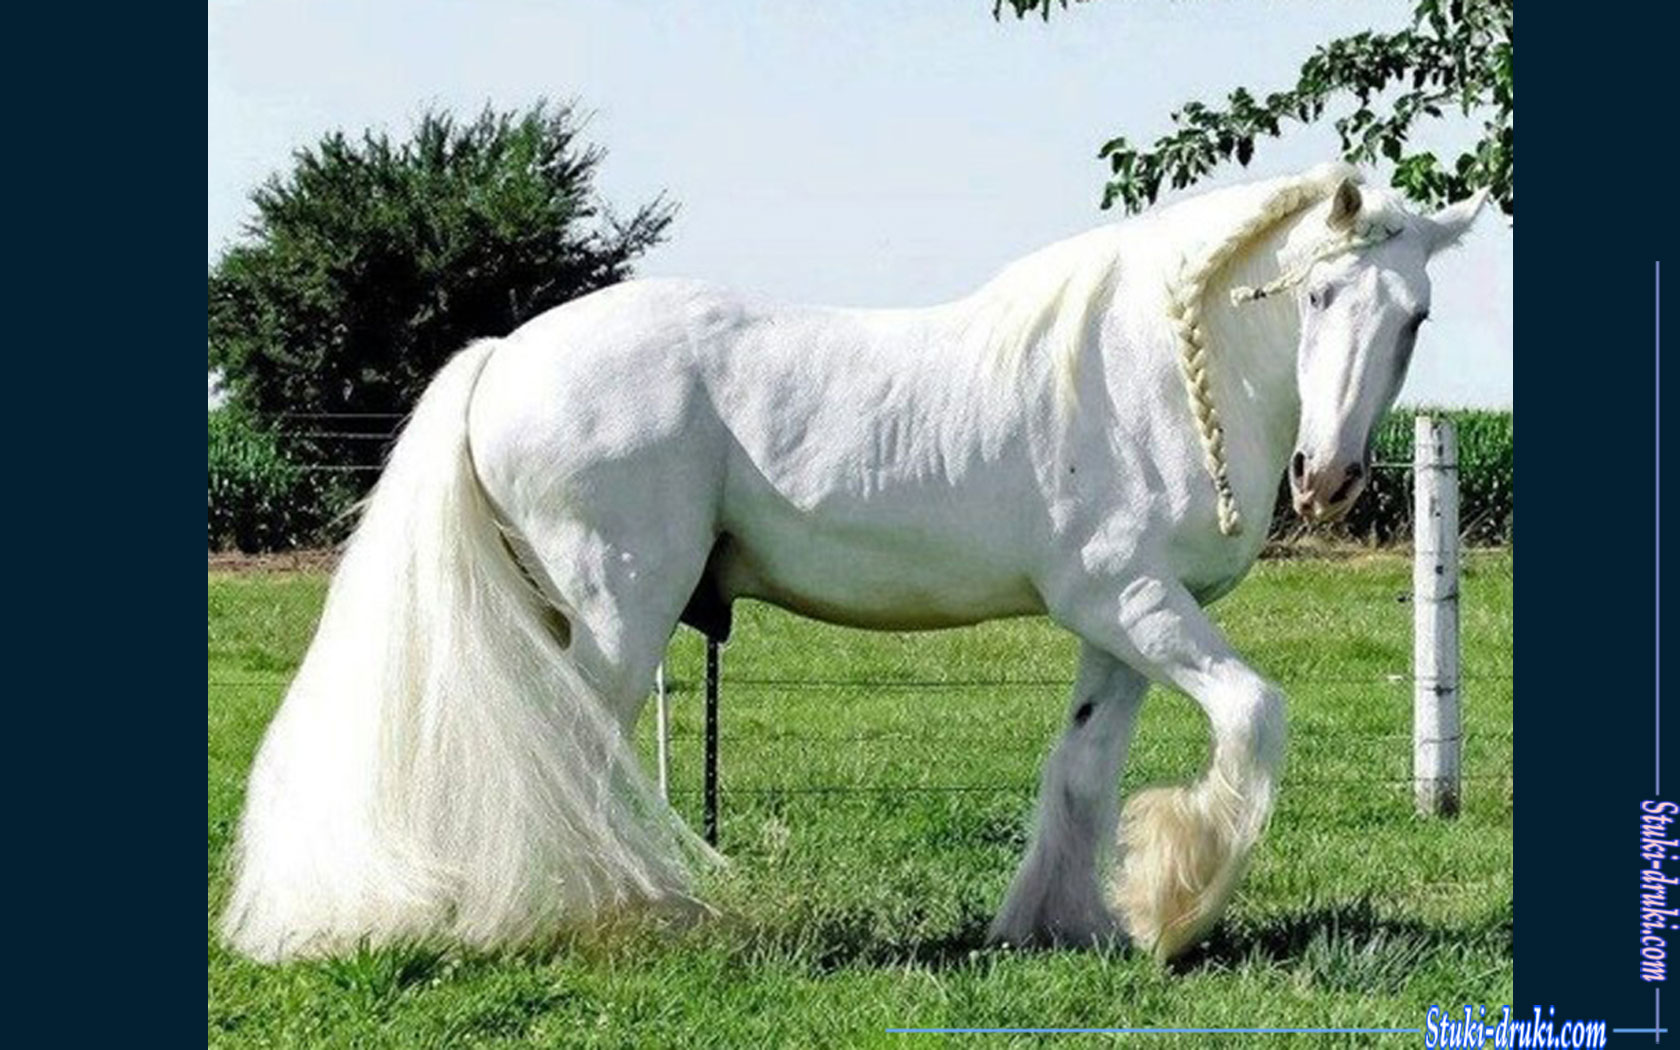 http://stuki-druki.com/Gallary05/images/white_horse_11.jpg